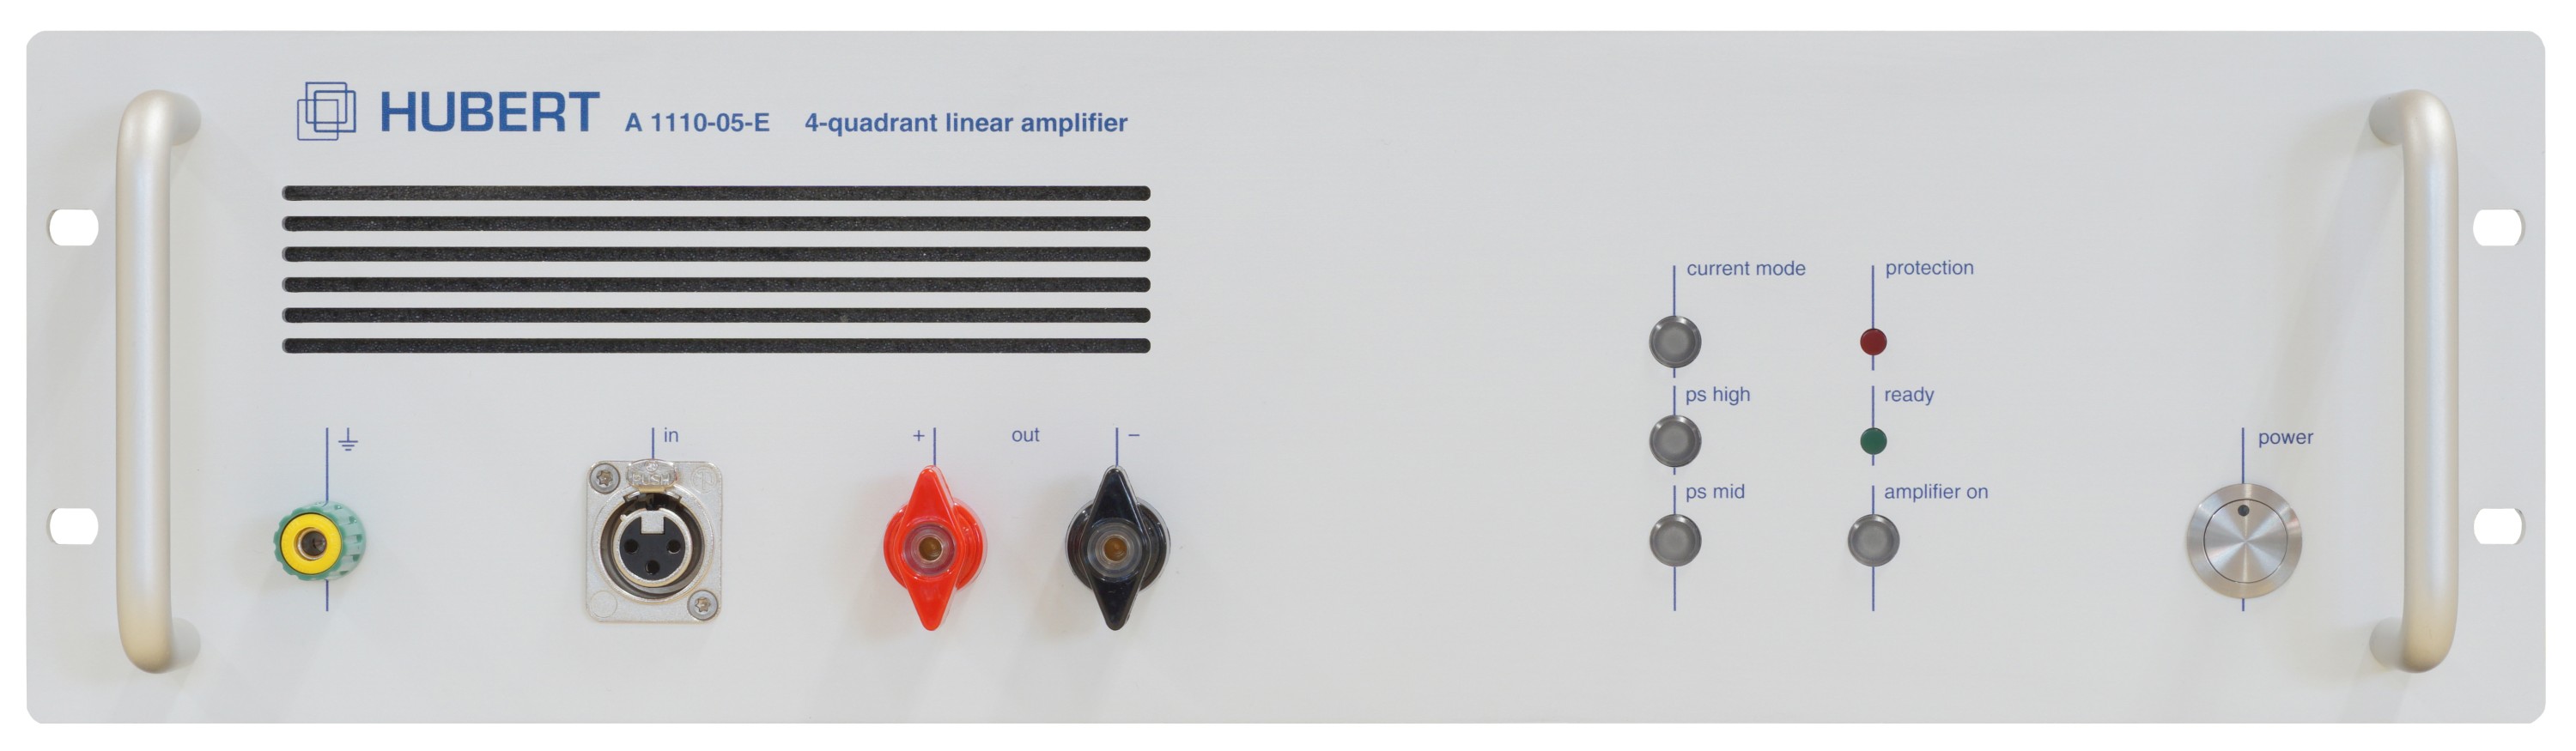 HUBERT A 1110-05-E linear amplifier